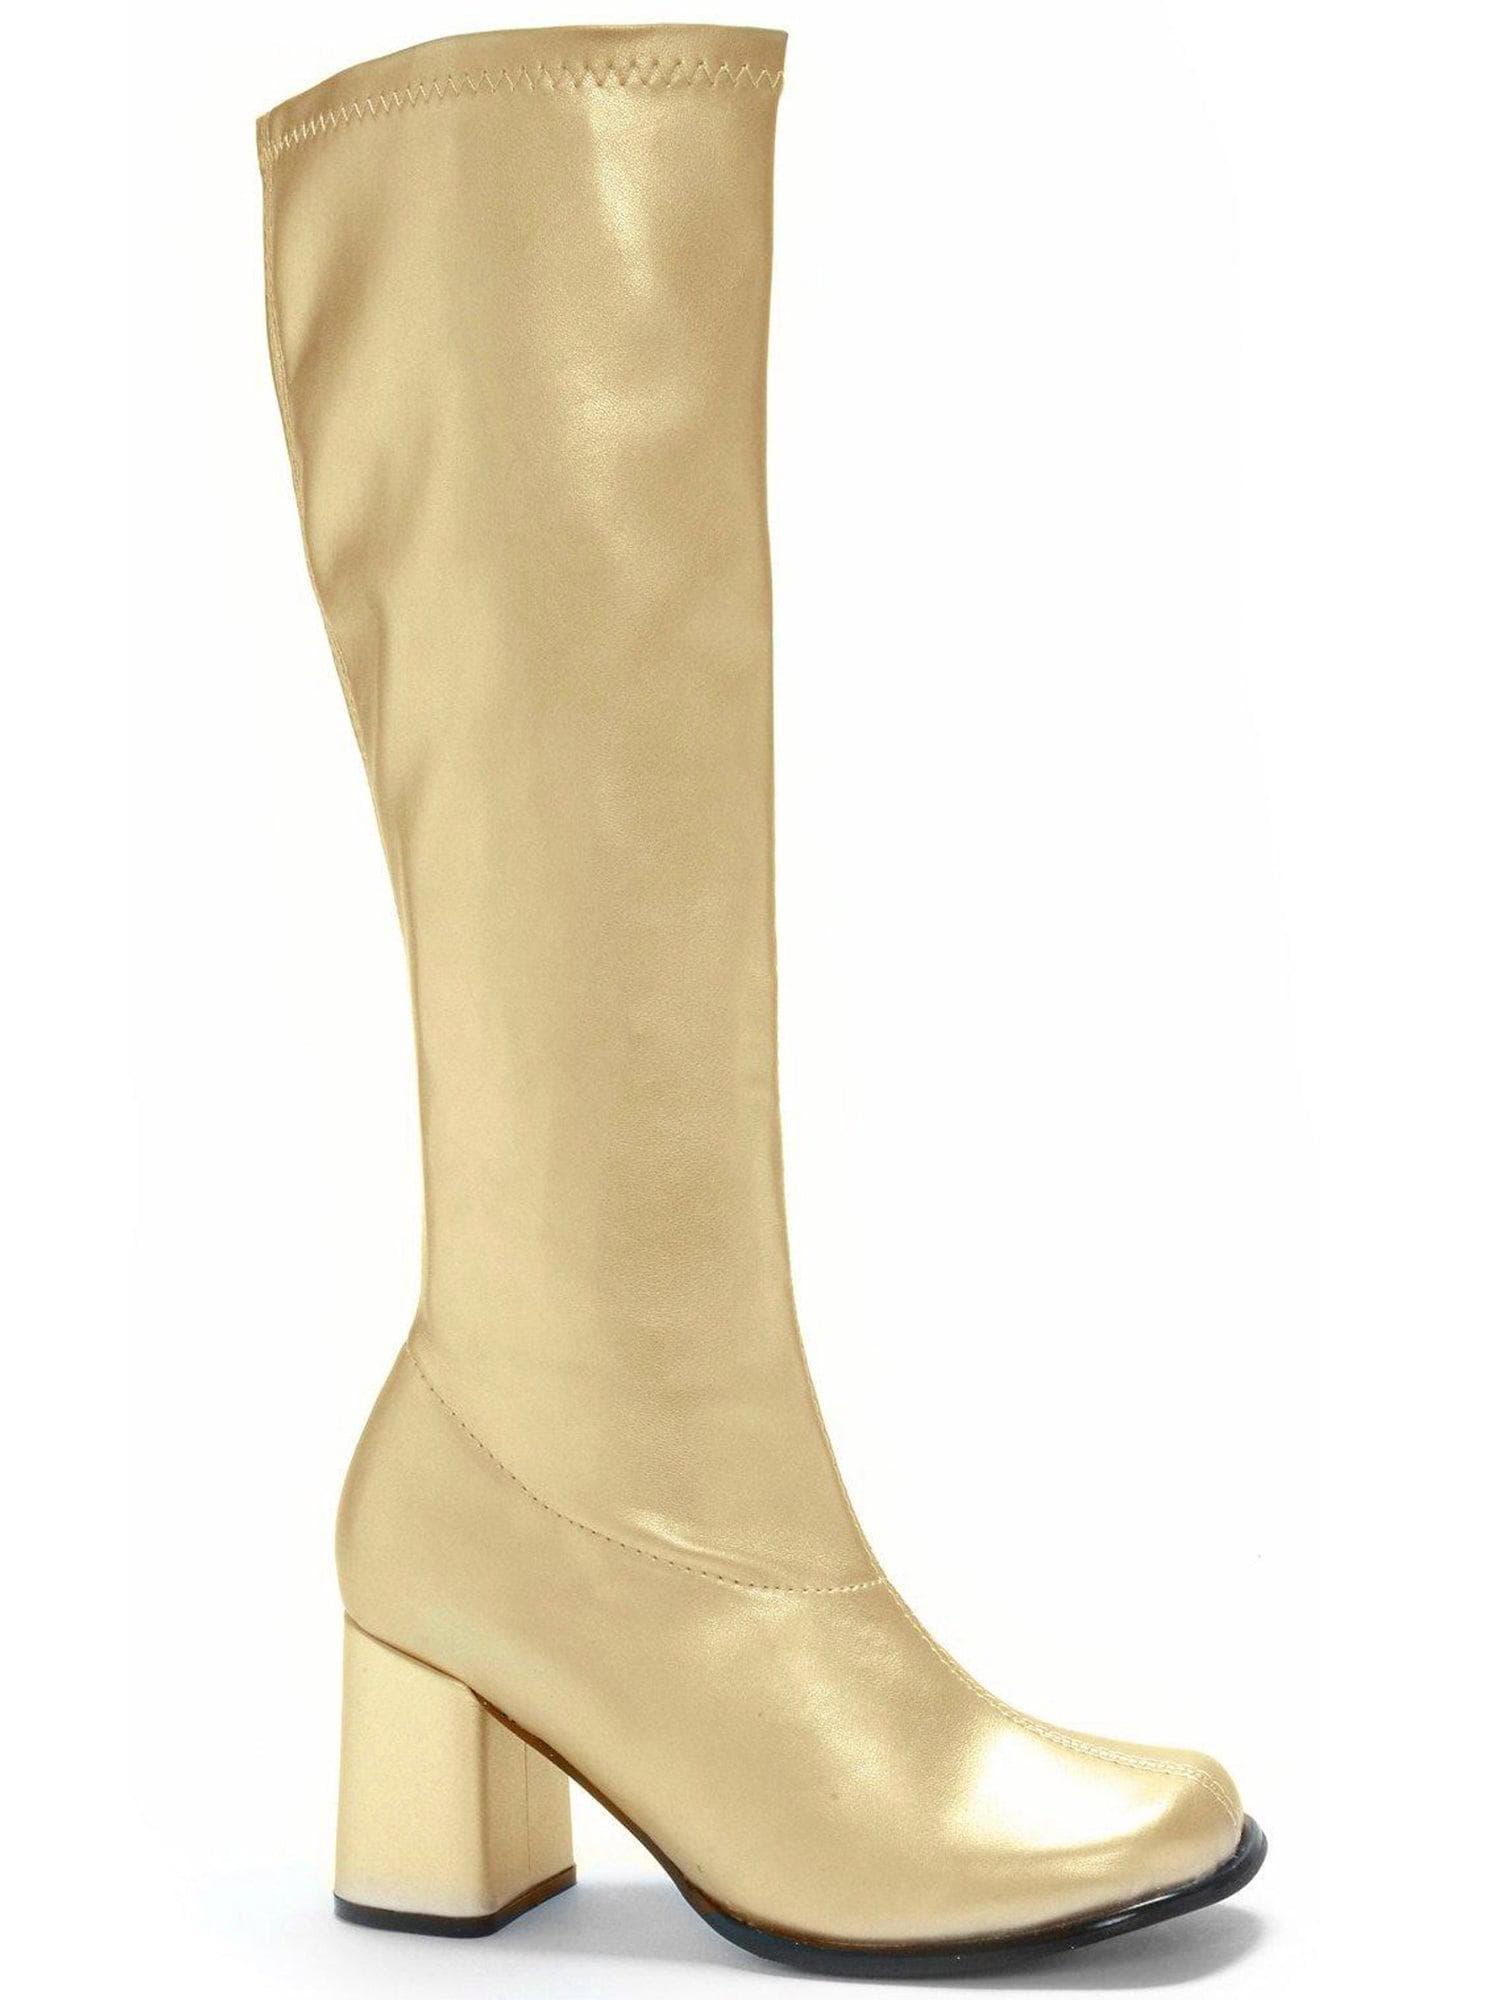 Adult Gold Metallic Go Go Boots - costumes.com